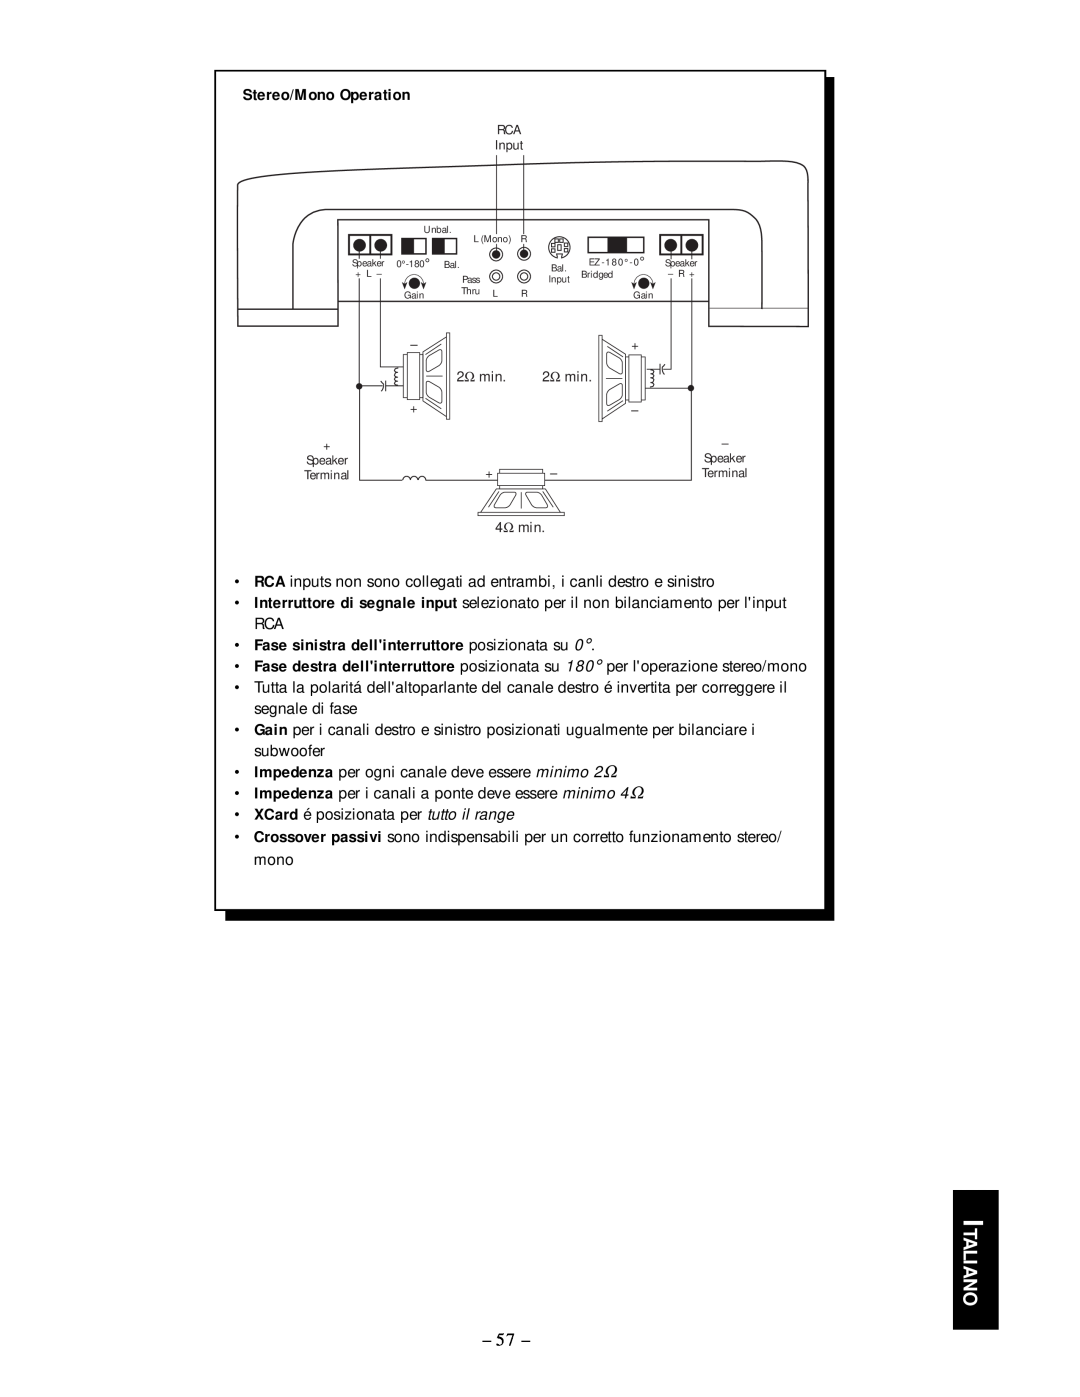 Rockford Fosgate 250.2 manual Italiano, Stereo/Mono Operation, Fase sinistra dellinterruttore posizionata su 